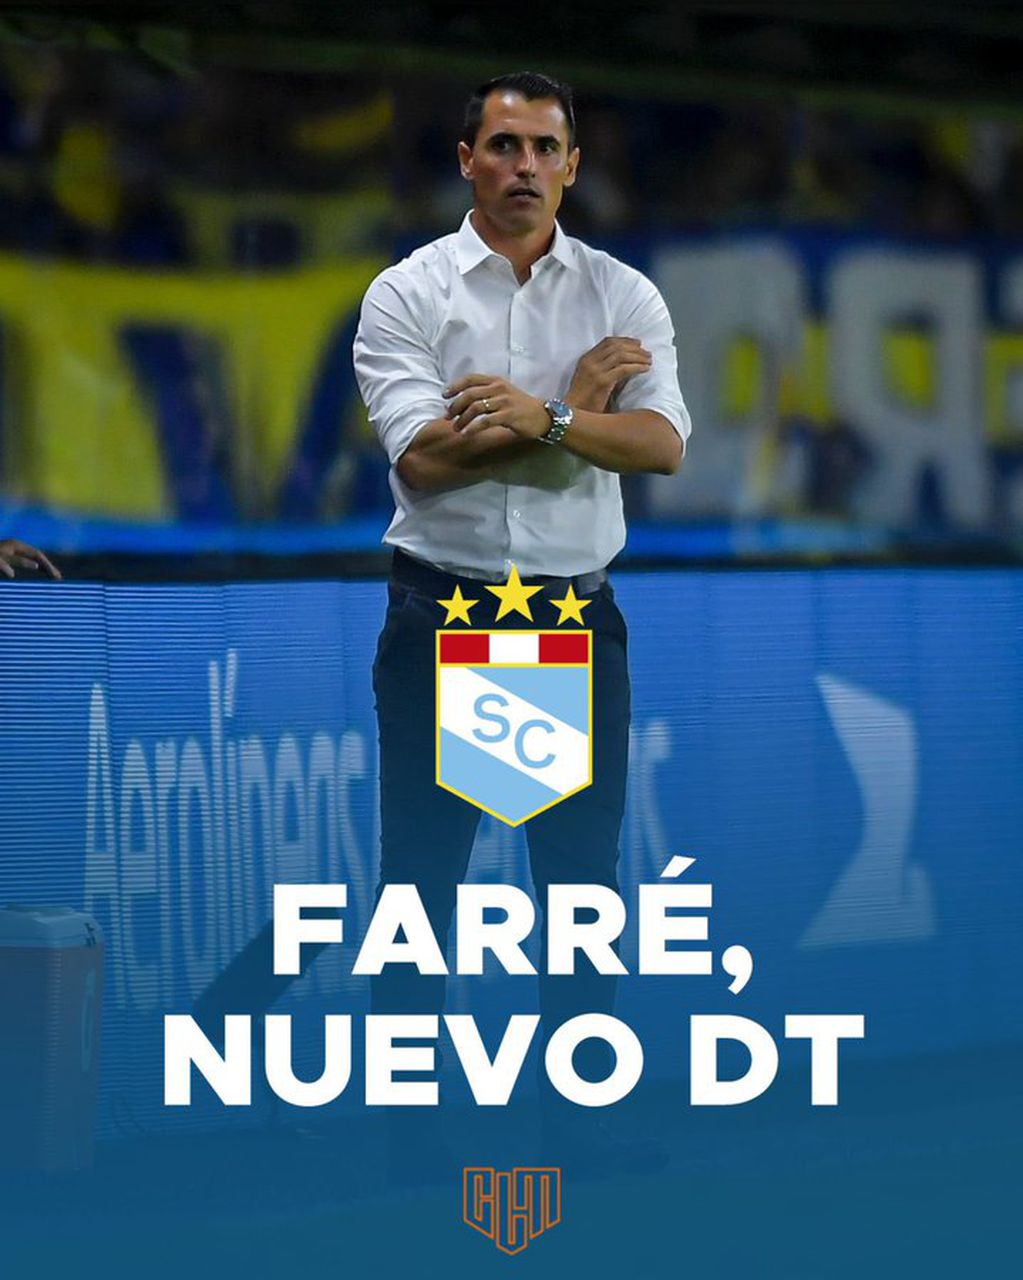 Farré será anunciado como nuevo entrenador de Sporting Cristal.